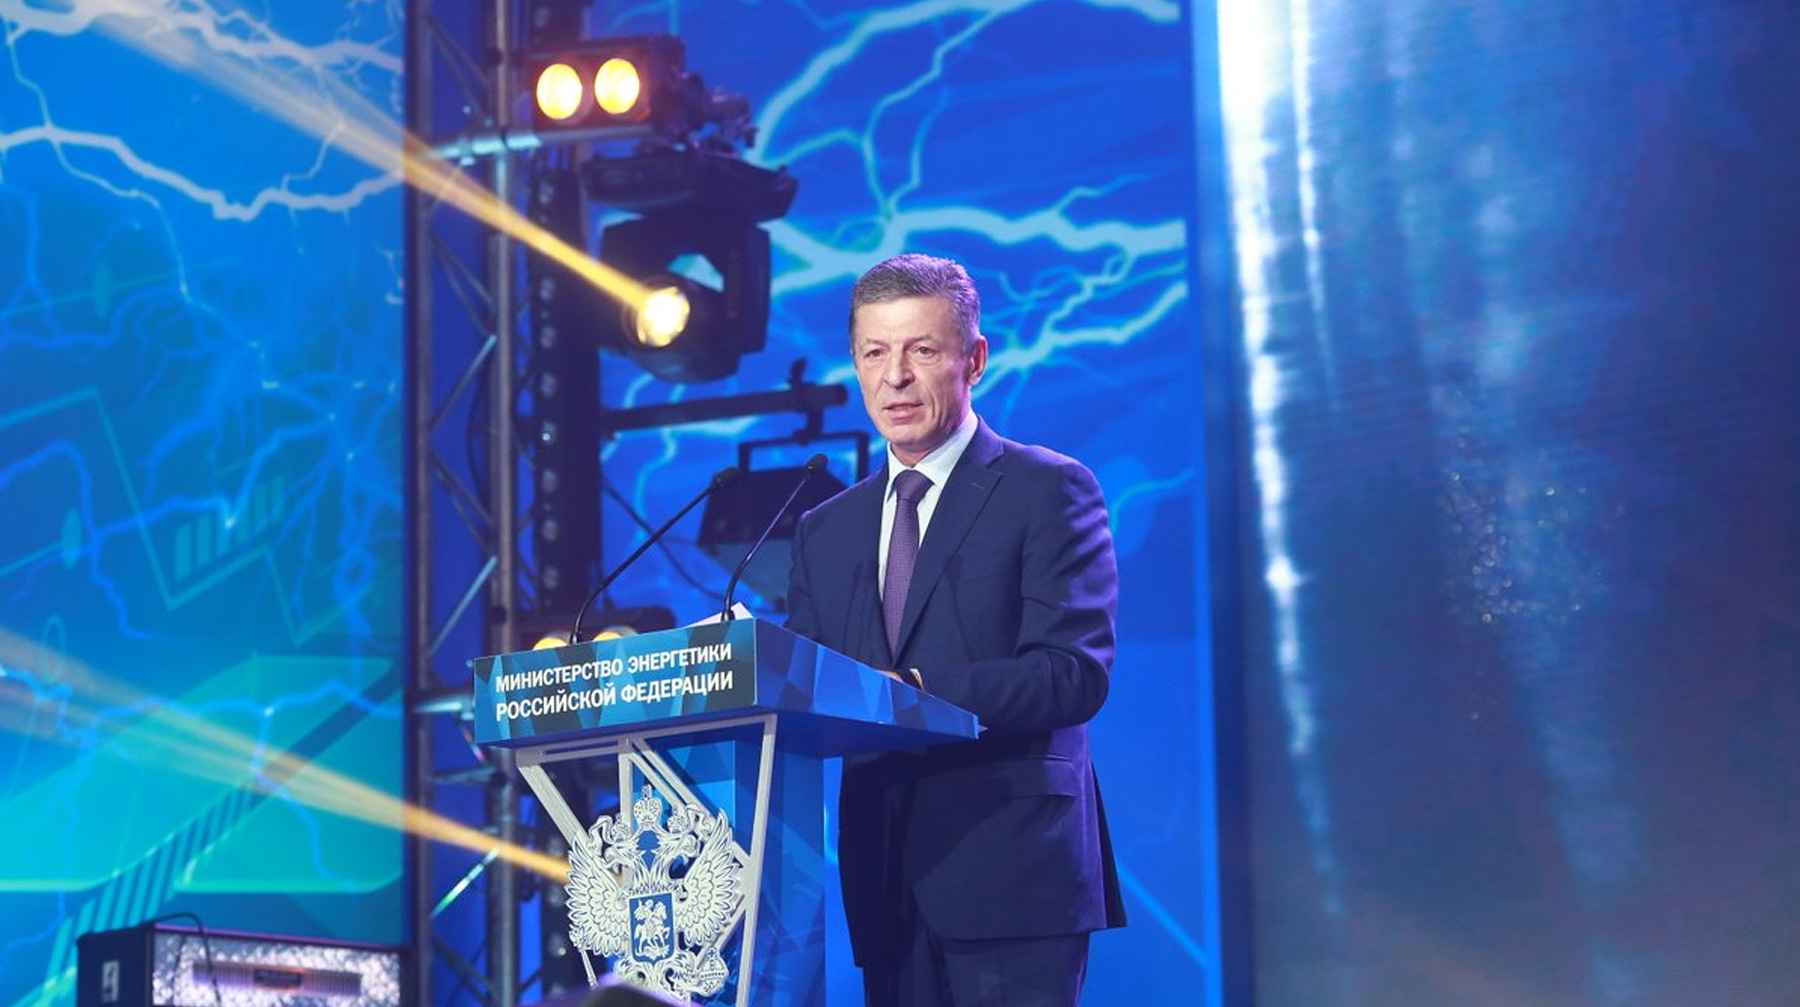 Вице-премьер заявил, что правительство намерено сконцентрироваться на повышении эффективности работы электросетевого комплекса Дмитрий Козак